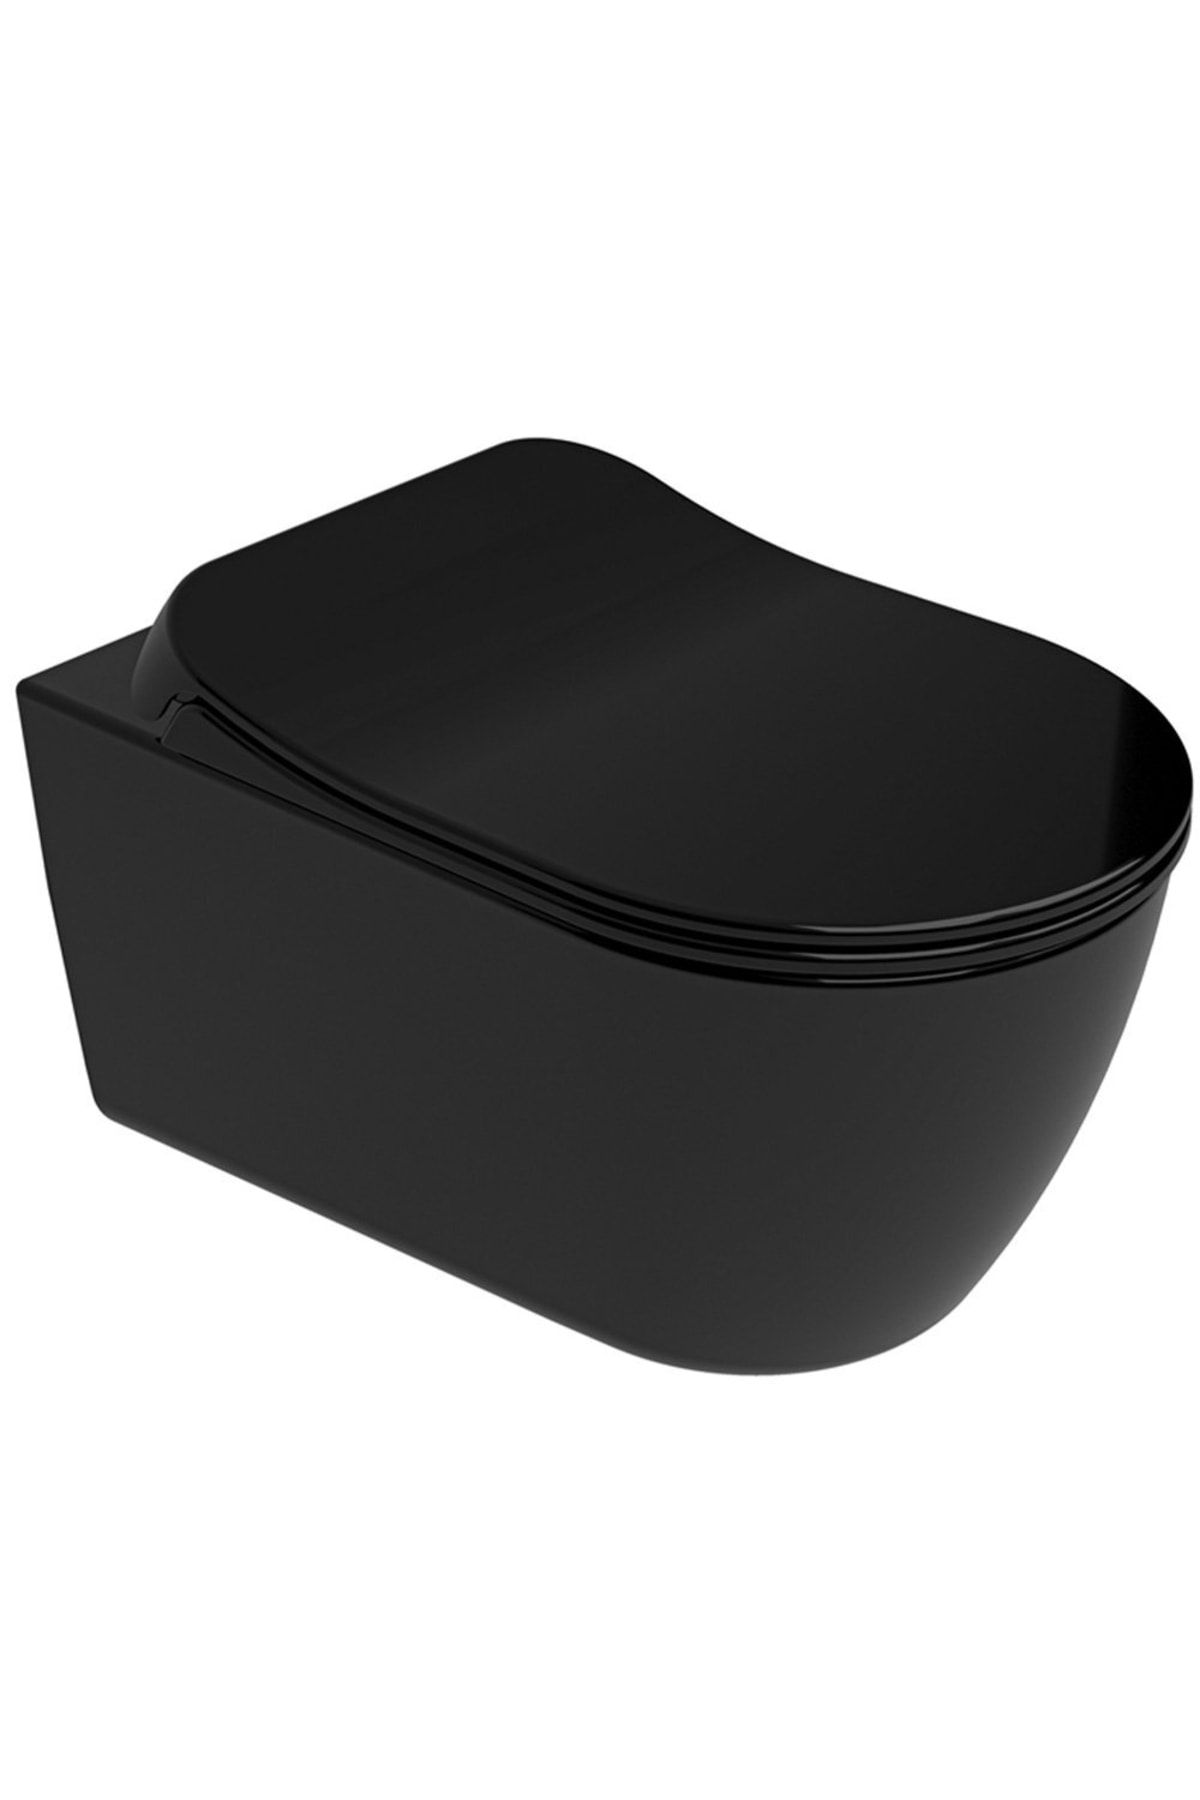 KALE Dove 2.0 Kanalsız Asma Klozet + Ultra Slim Yavaş Kapanan Klozet Kapağı (siyah)